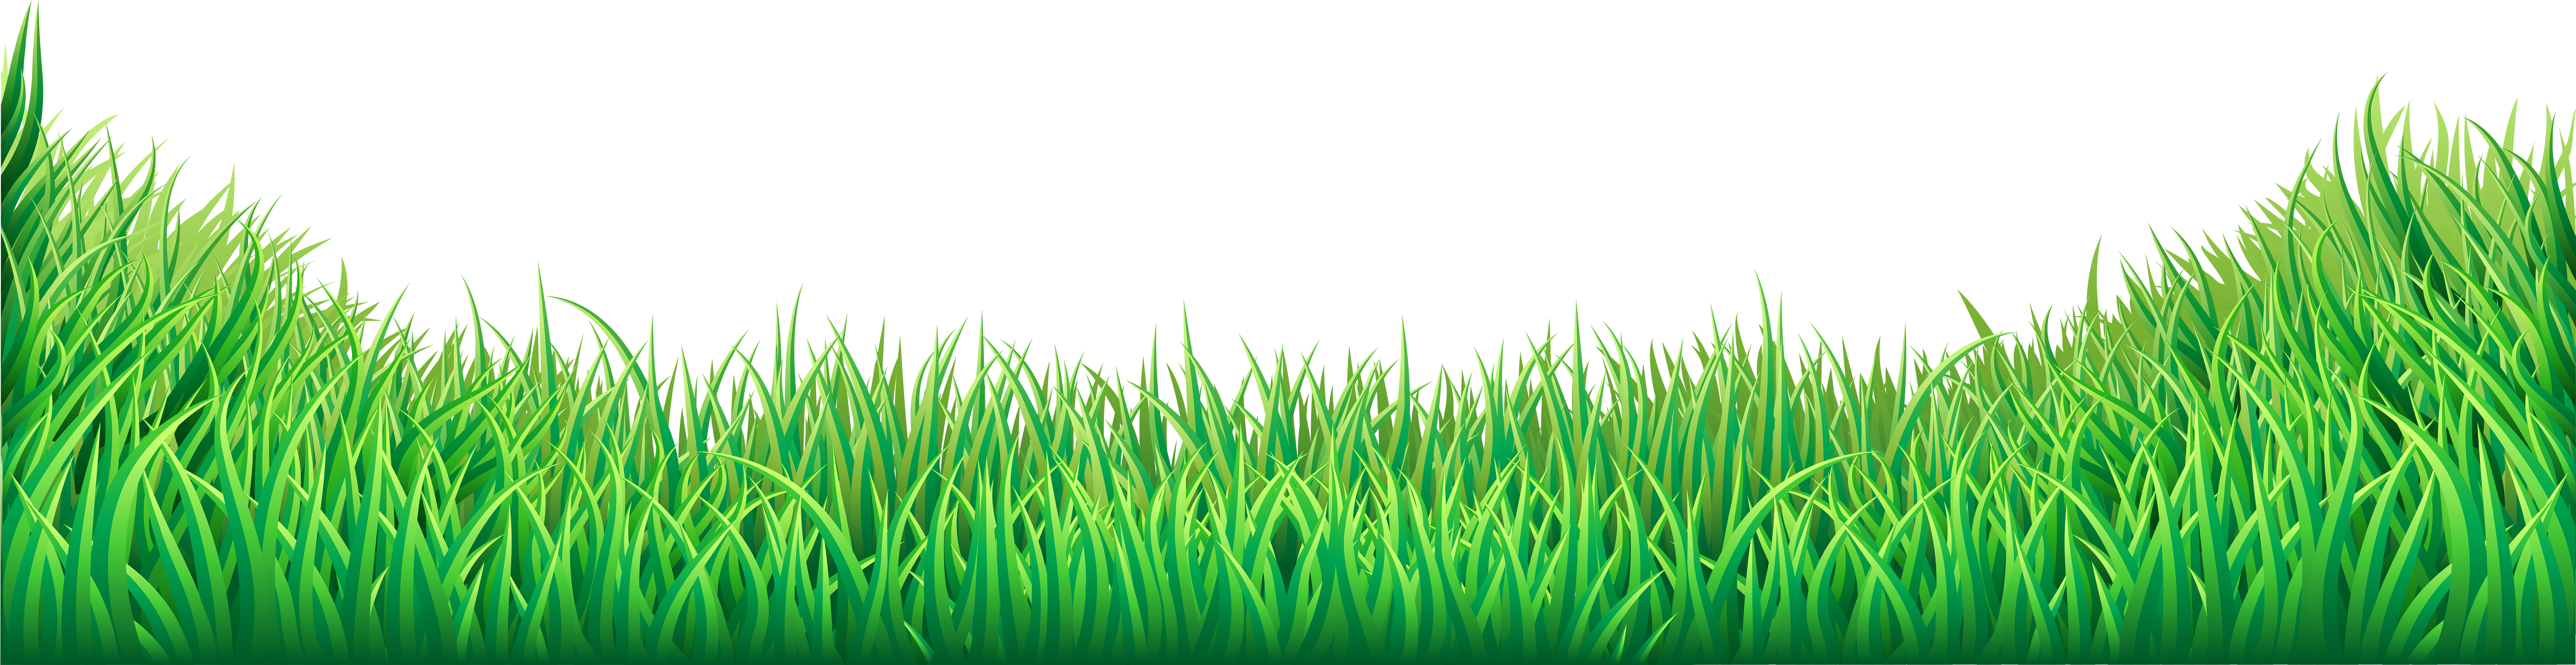 A Close-up Of Grass